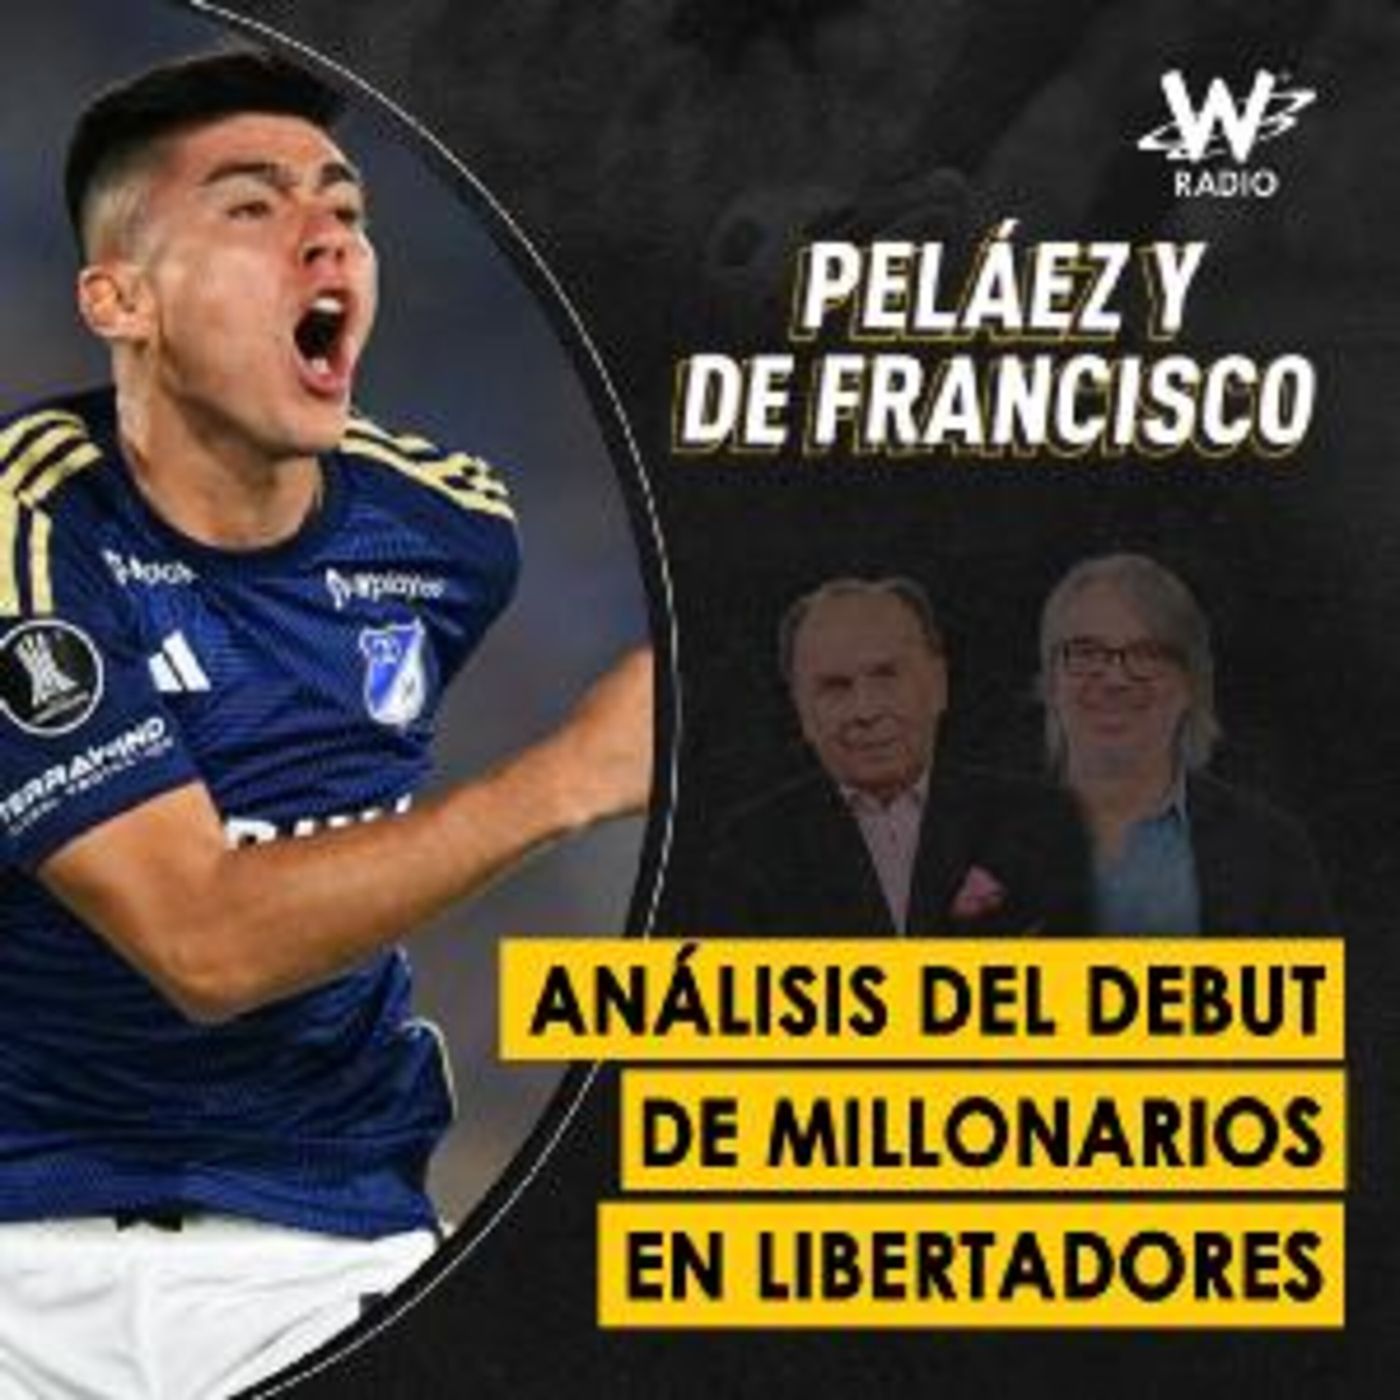 Análisis del debut de Millonarios en Libertadores